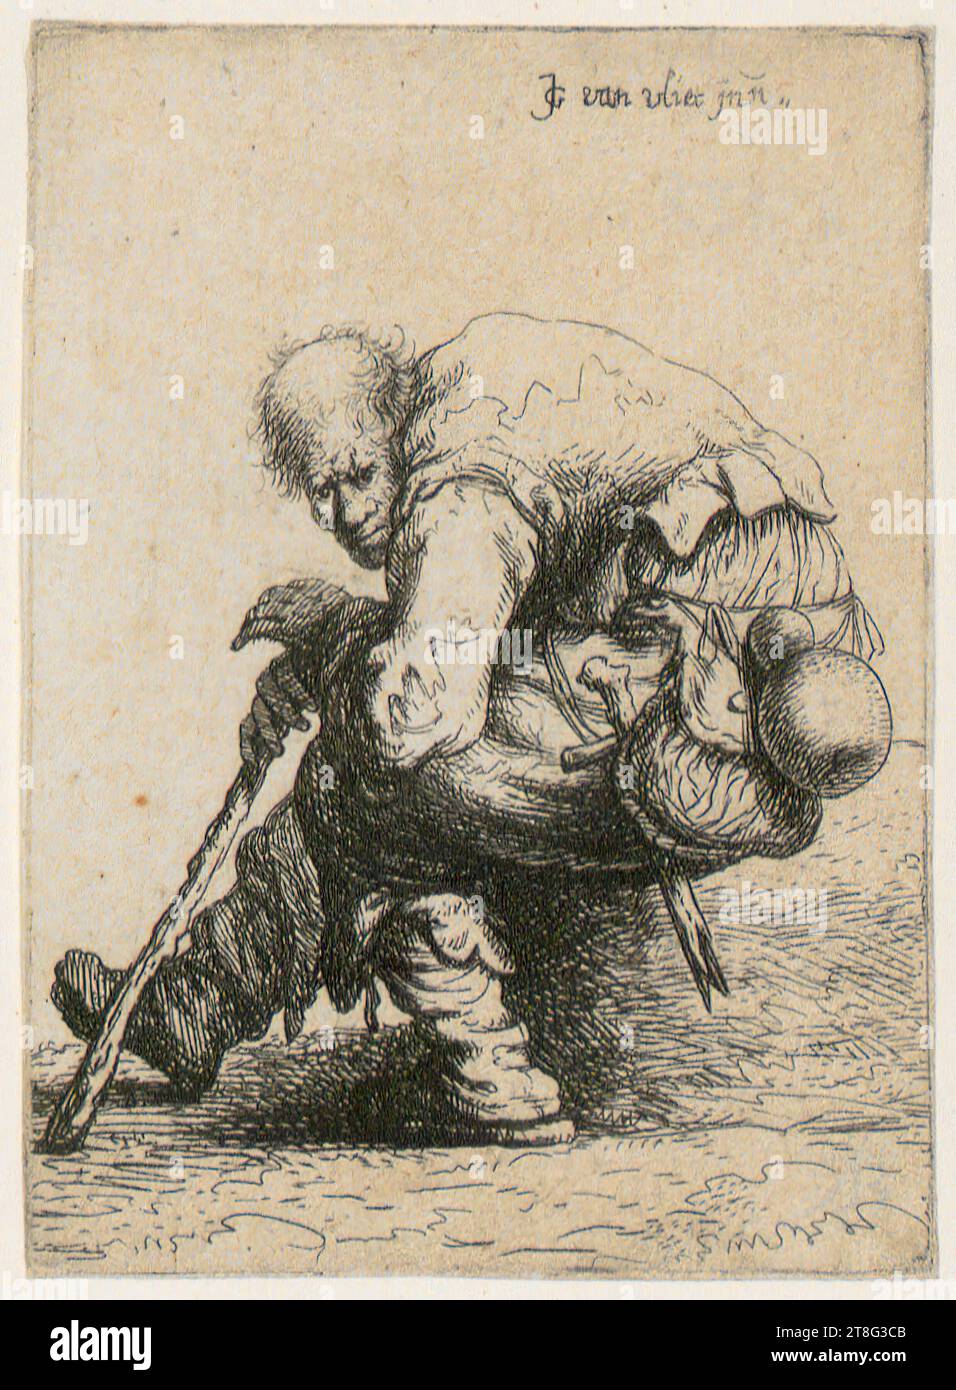 Johannes van Vliet (1628 - 1637 mentionné autour), mendiant assis, feuille 5 de la série 'mendiant', origine de l'impression : 1632, gravure et gravure sur cuivre, dimensions de la feuille : 9,5 x 6,7 cm, en haut à droite signée 'JG van vliet jnu Banque D'Images